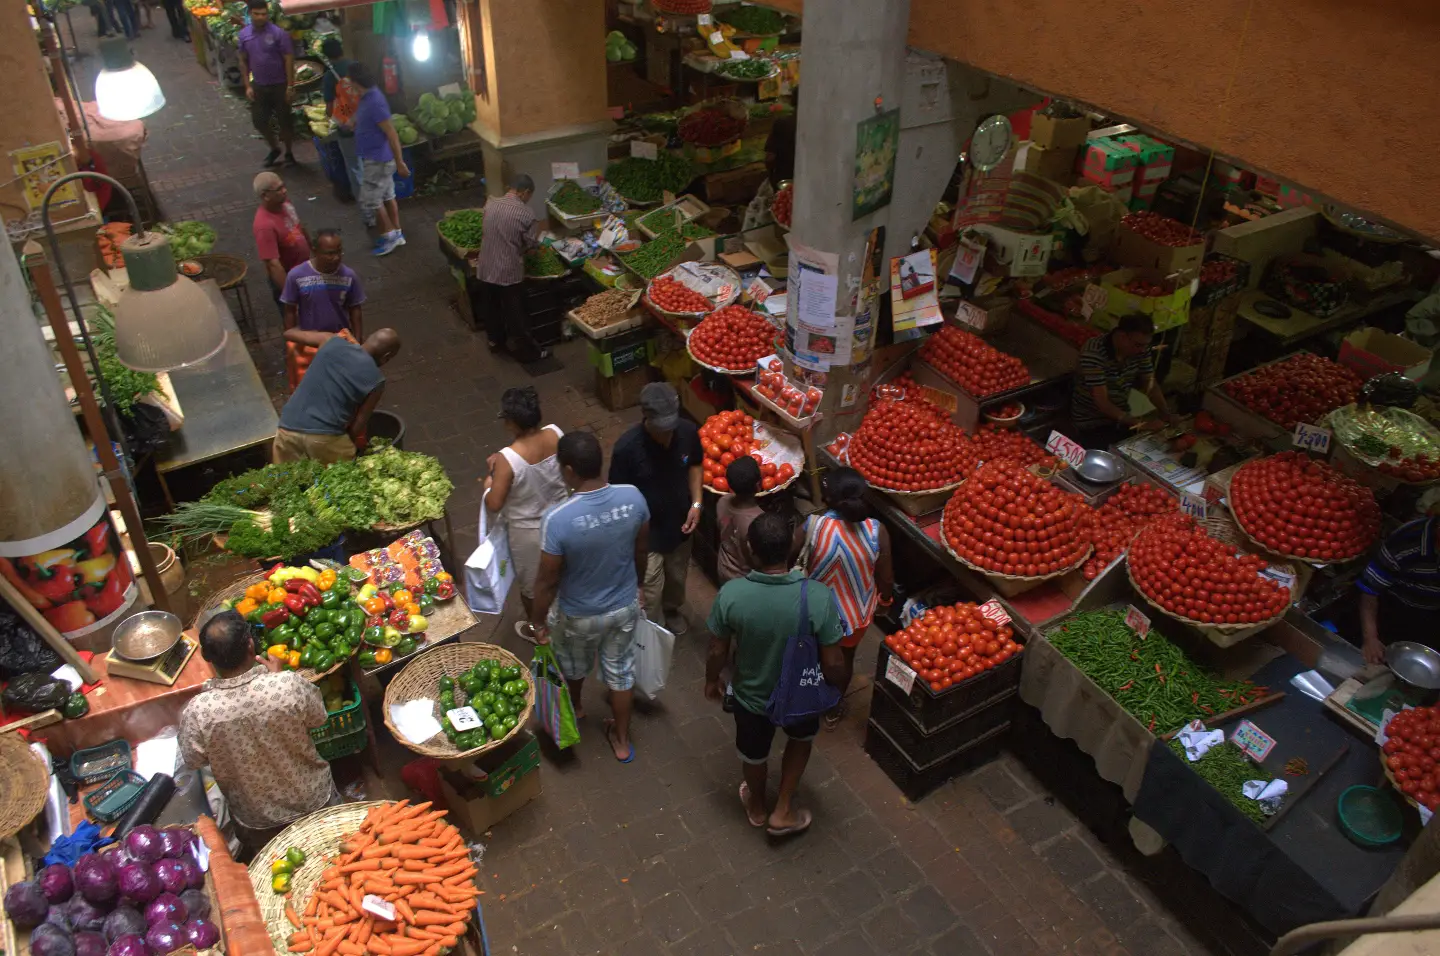 market veg